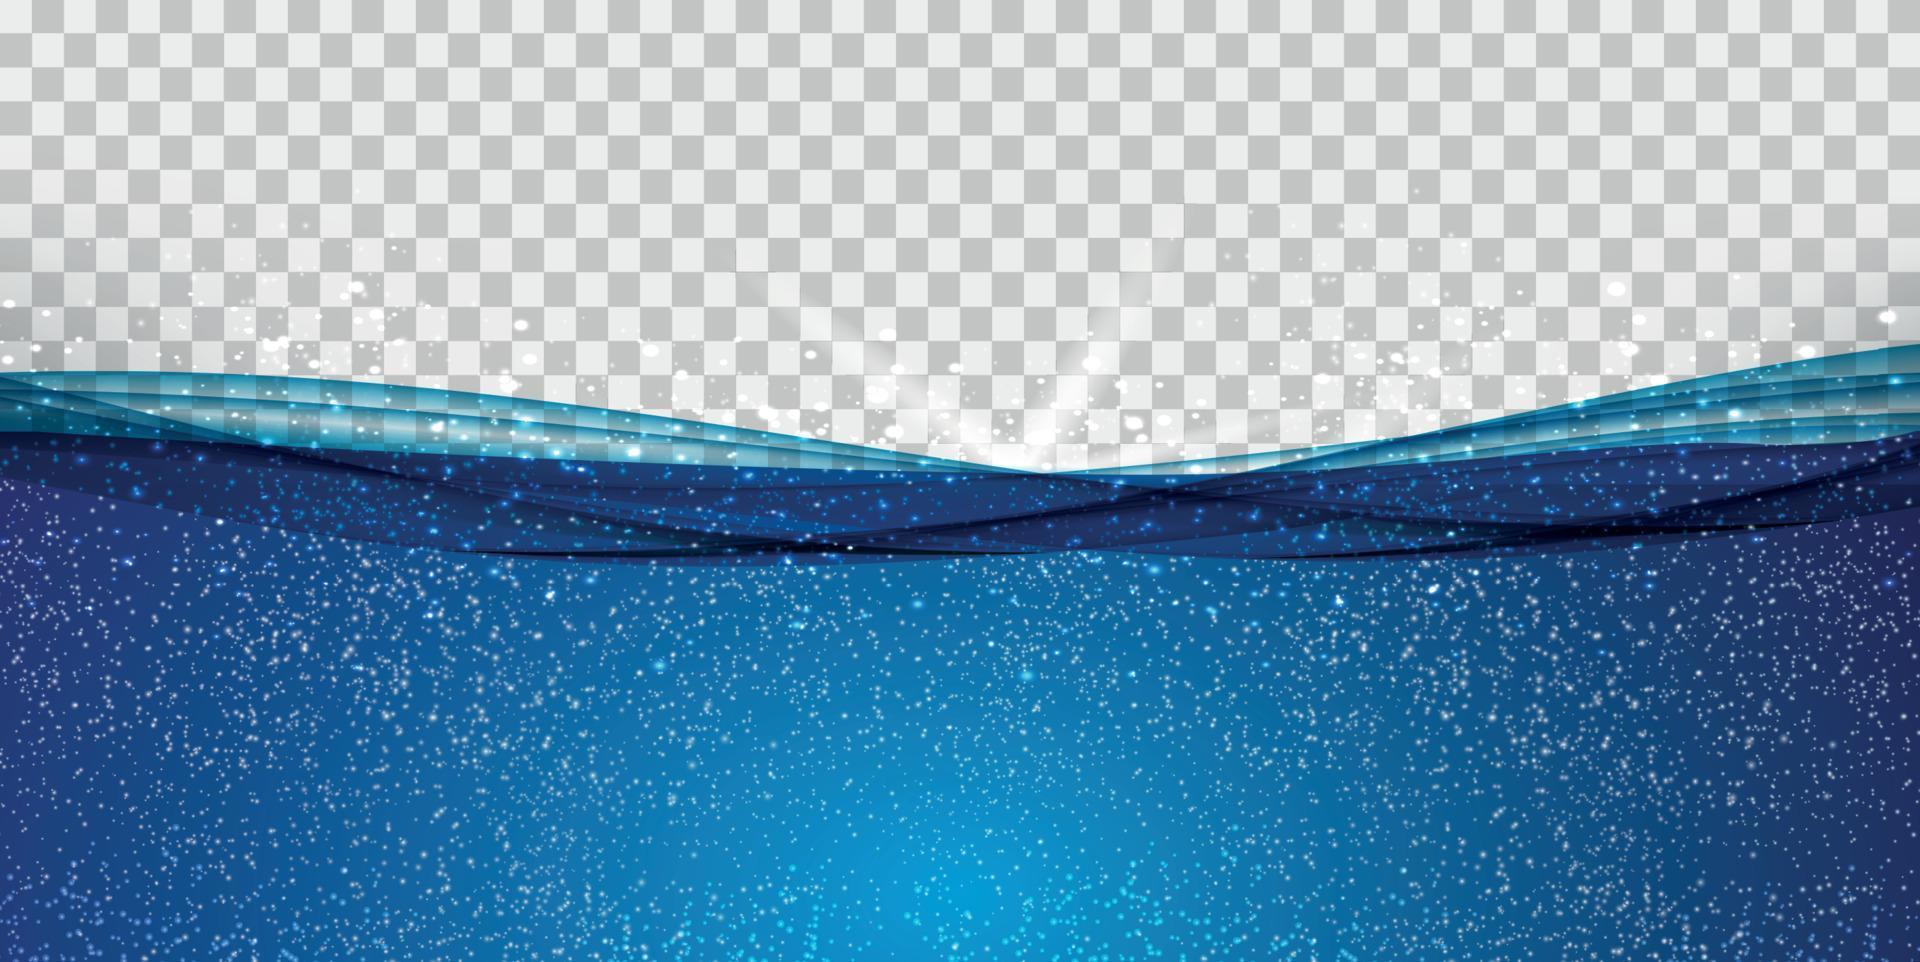 onda dell'oceano subacqueo blu astratta su sfondo trasparente. illustrazione vettoriale